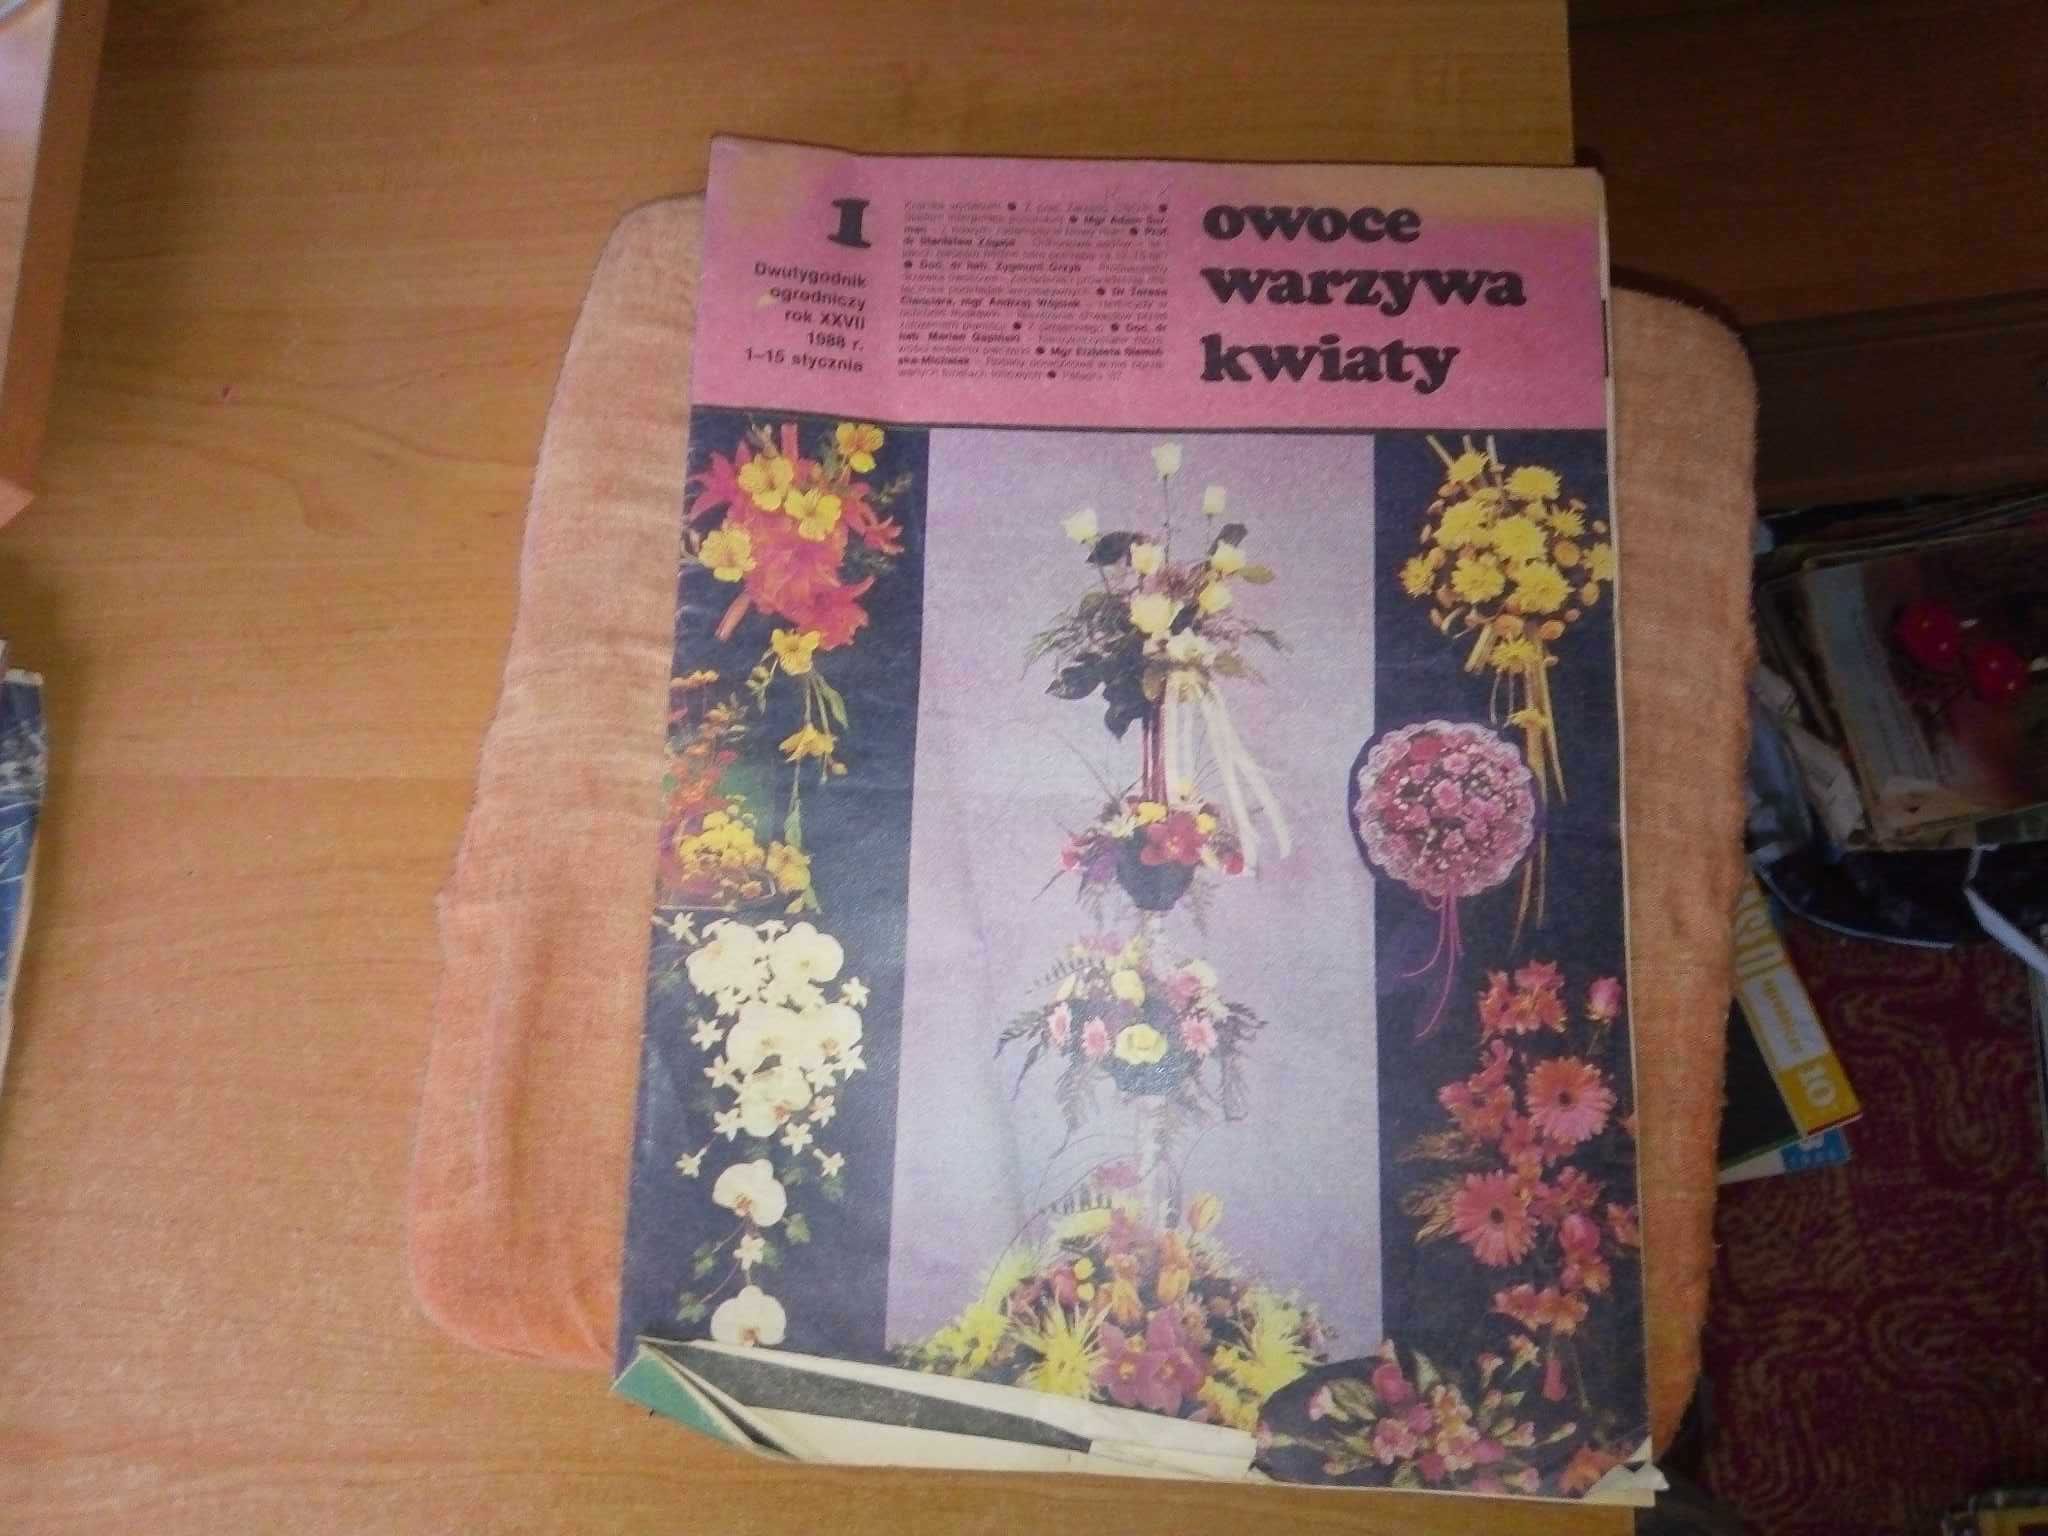 Owoce warzywa kwiaty dwutygodnik 1 1988 ogrodniczy gazeta czasopismo